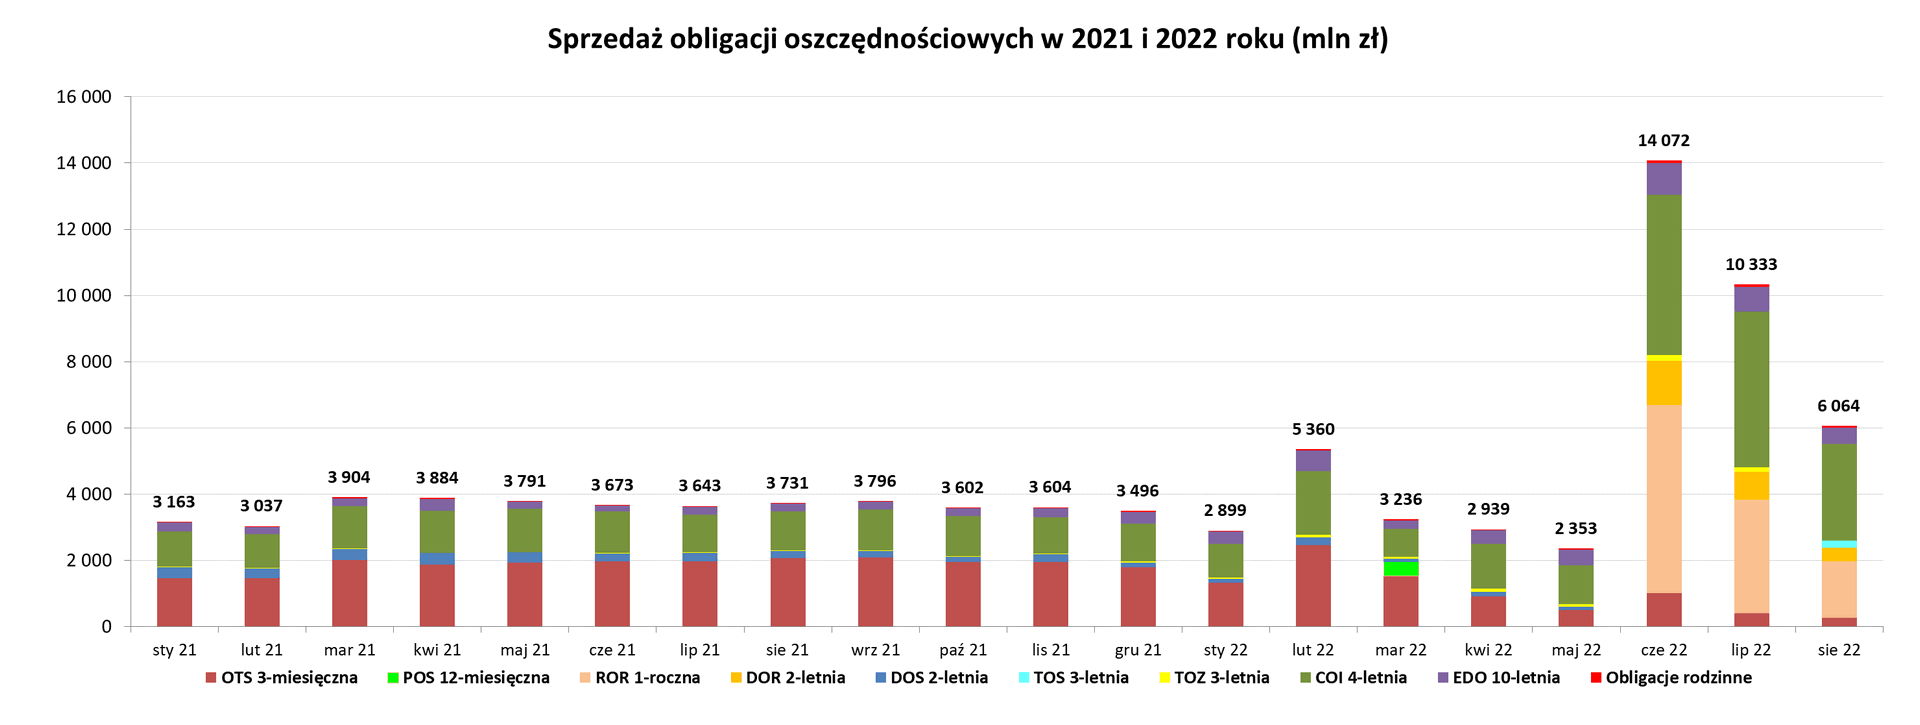 Wykres: Sprzedaż obligacji oszczędnościowych w 2021 i 2022 roku (mln zł)